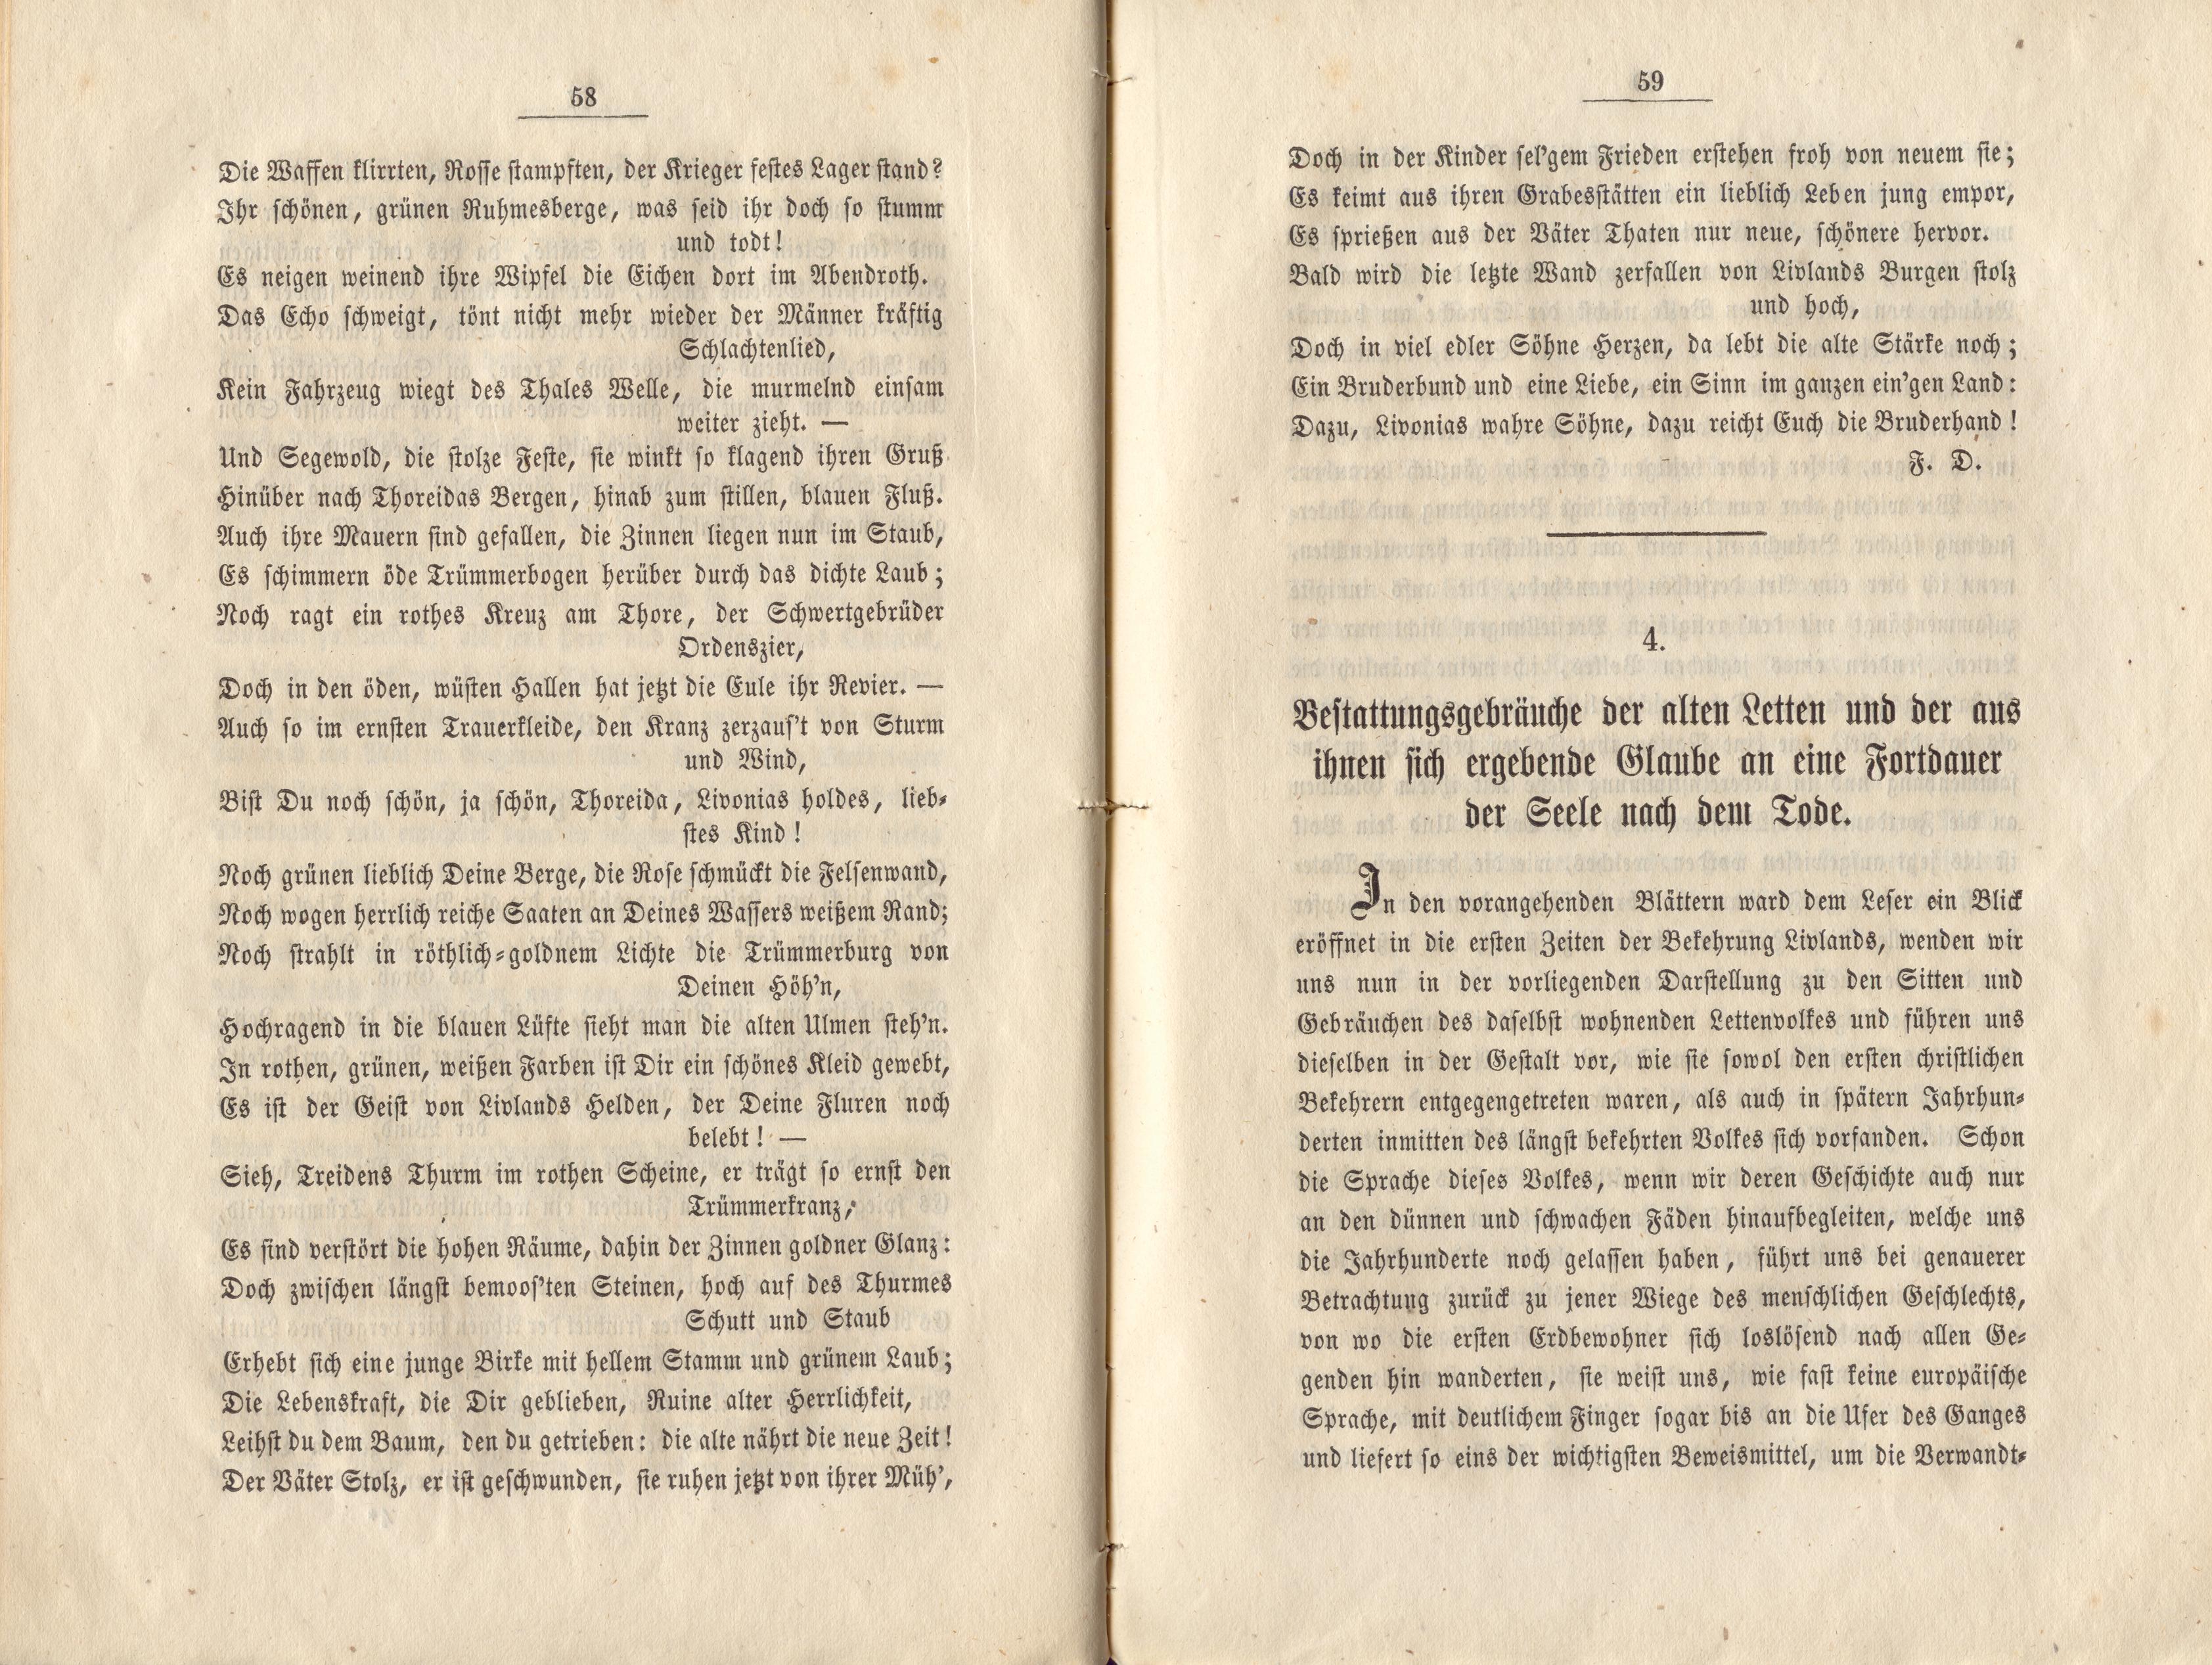 Felliner Blätter (1859) | 30. (58-59) Main body of text